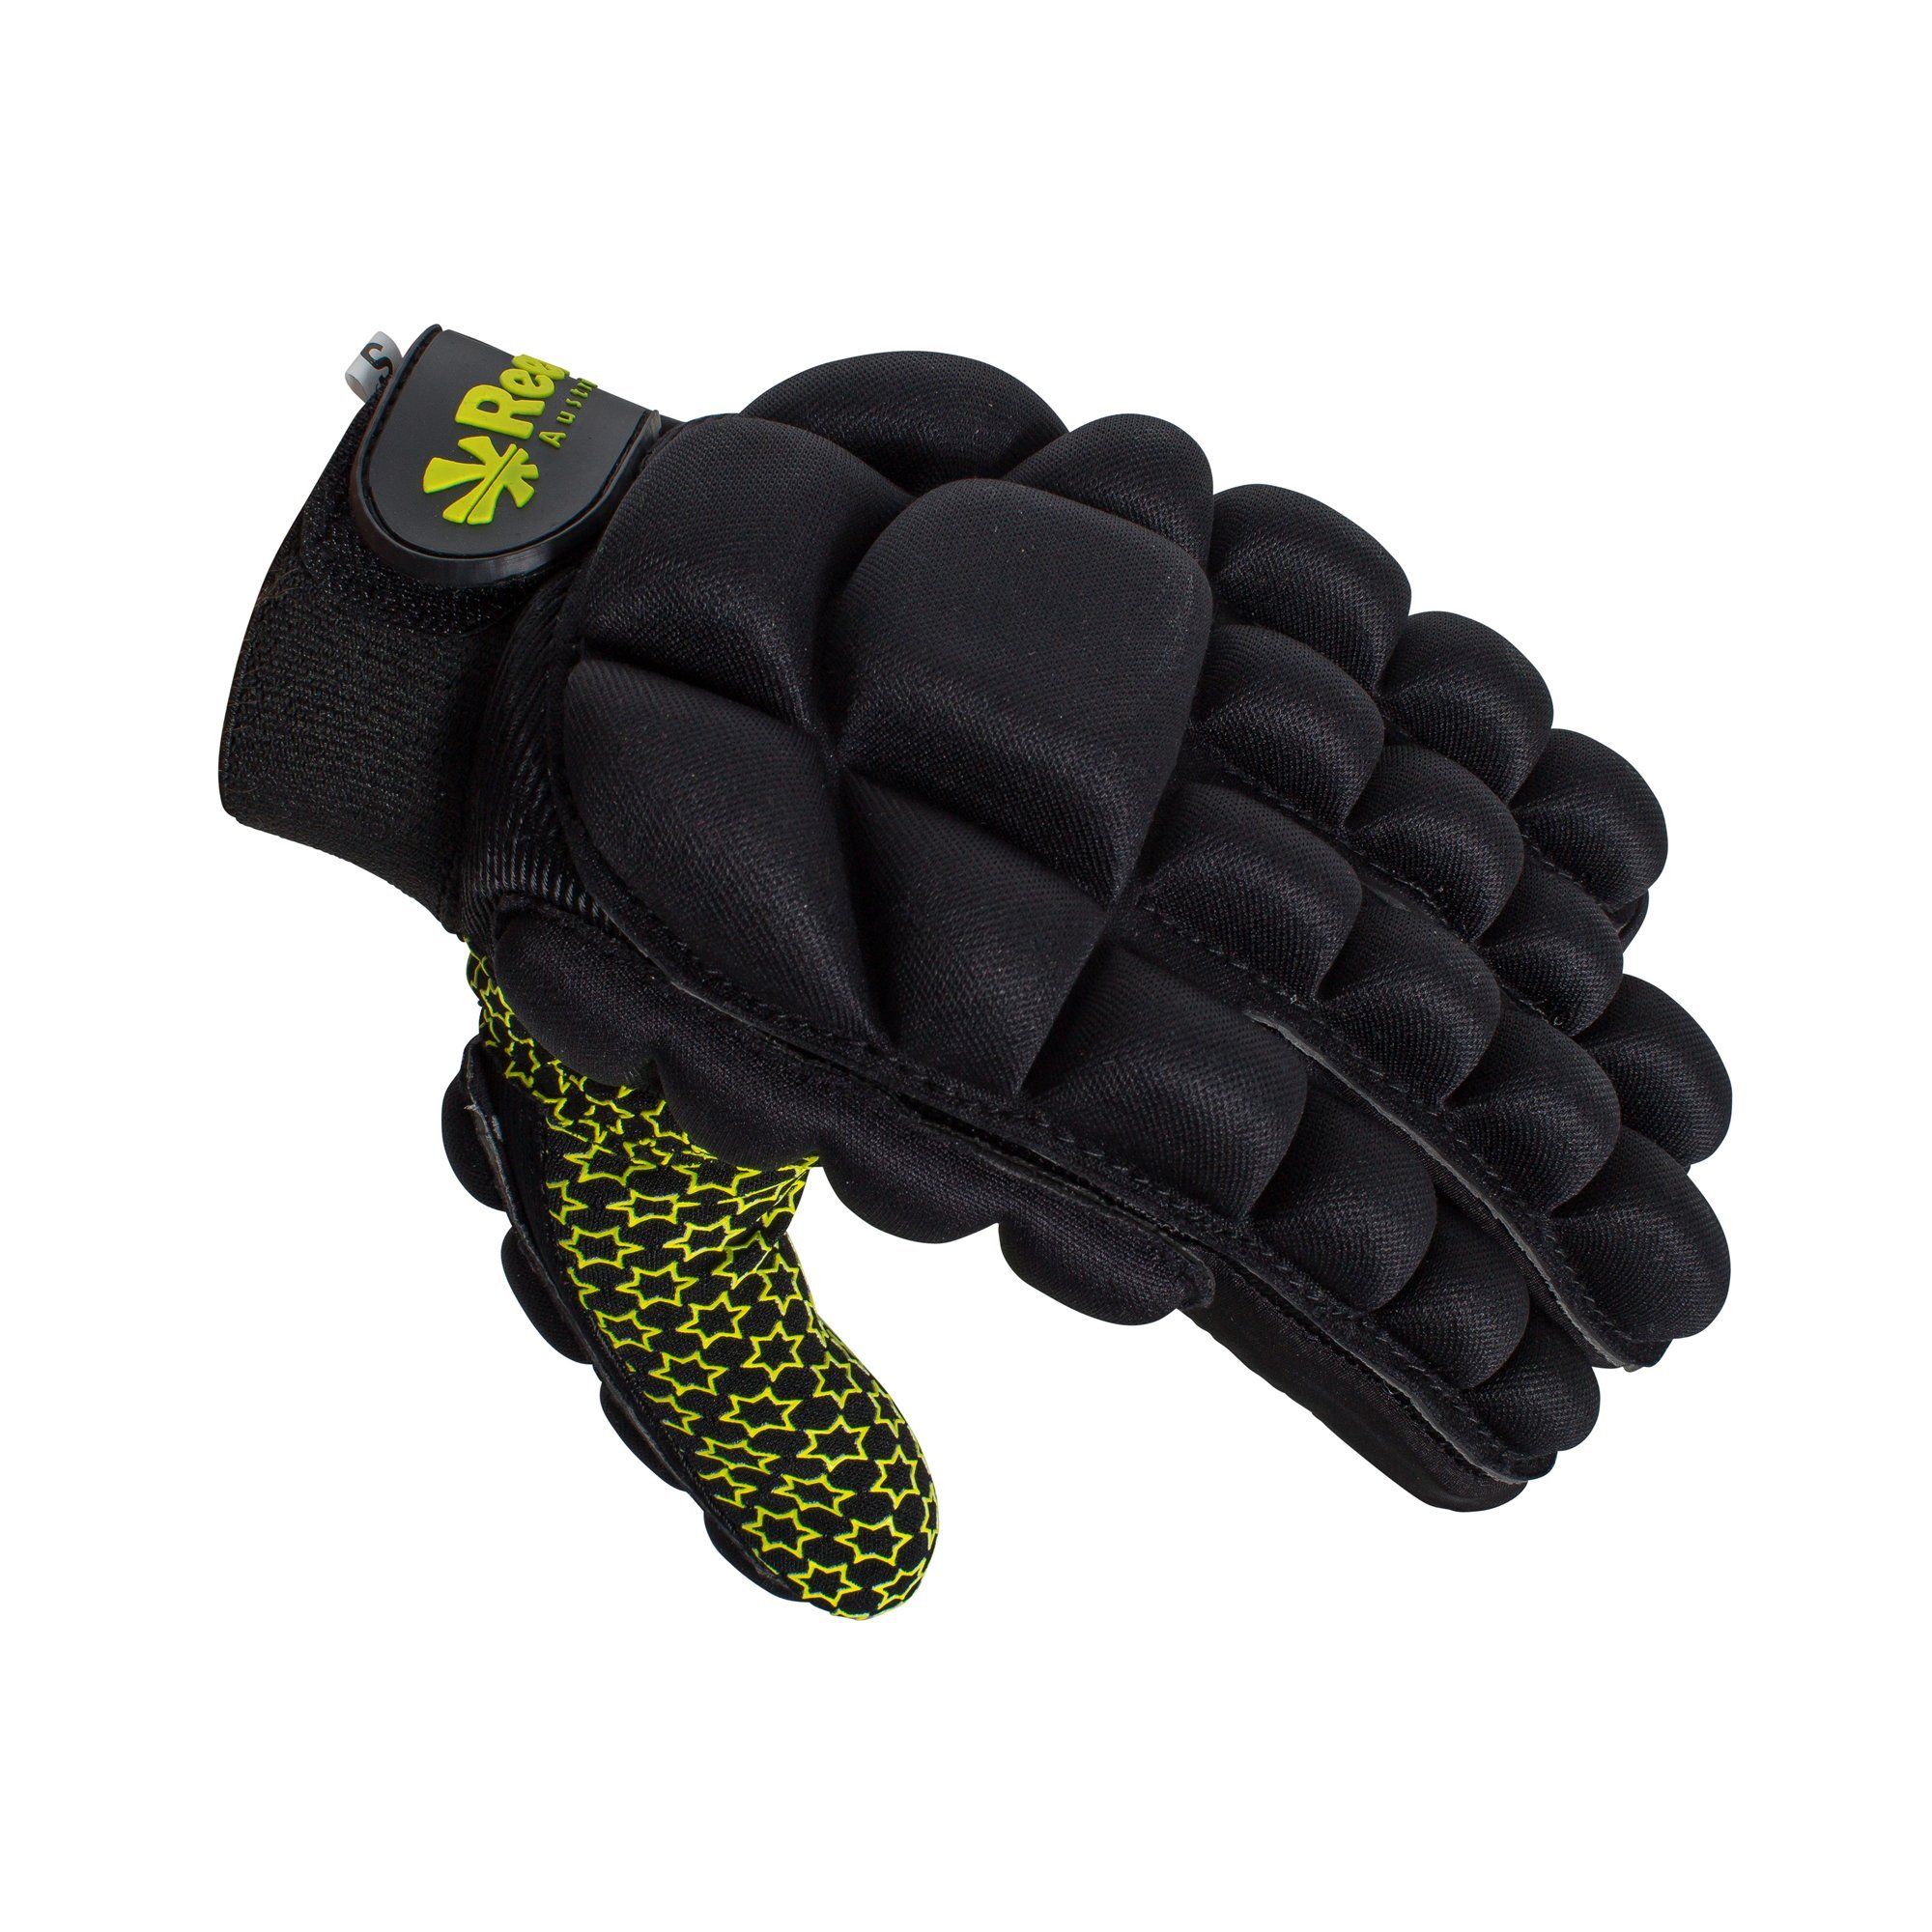 Reece Australia Comfort Full Finger Glove